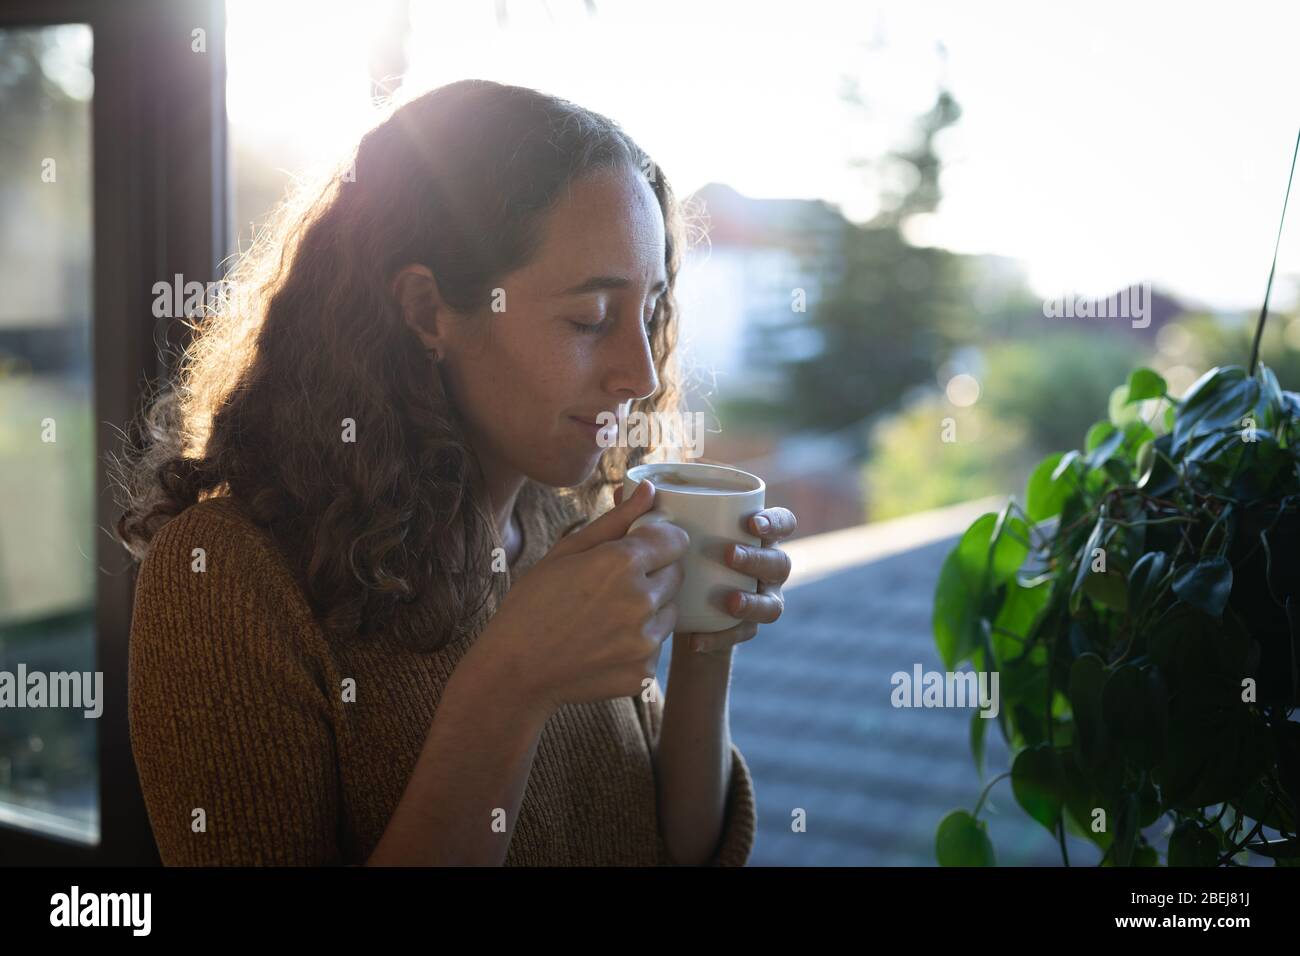 Mujer tomando café. Distanciamiento social en bloqueo de cuarentena durante la epidemia de coronavirus. Foto de stock